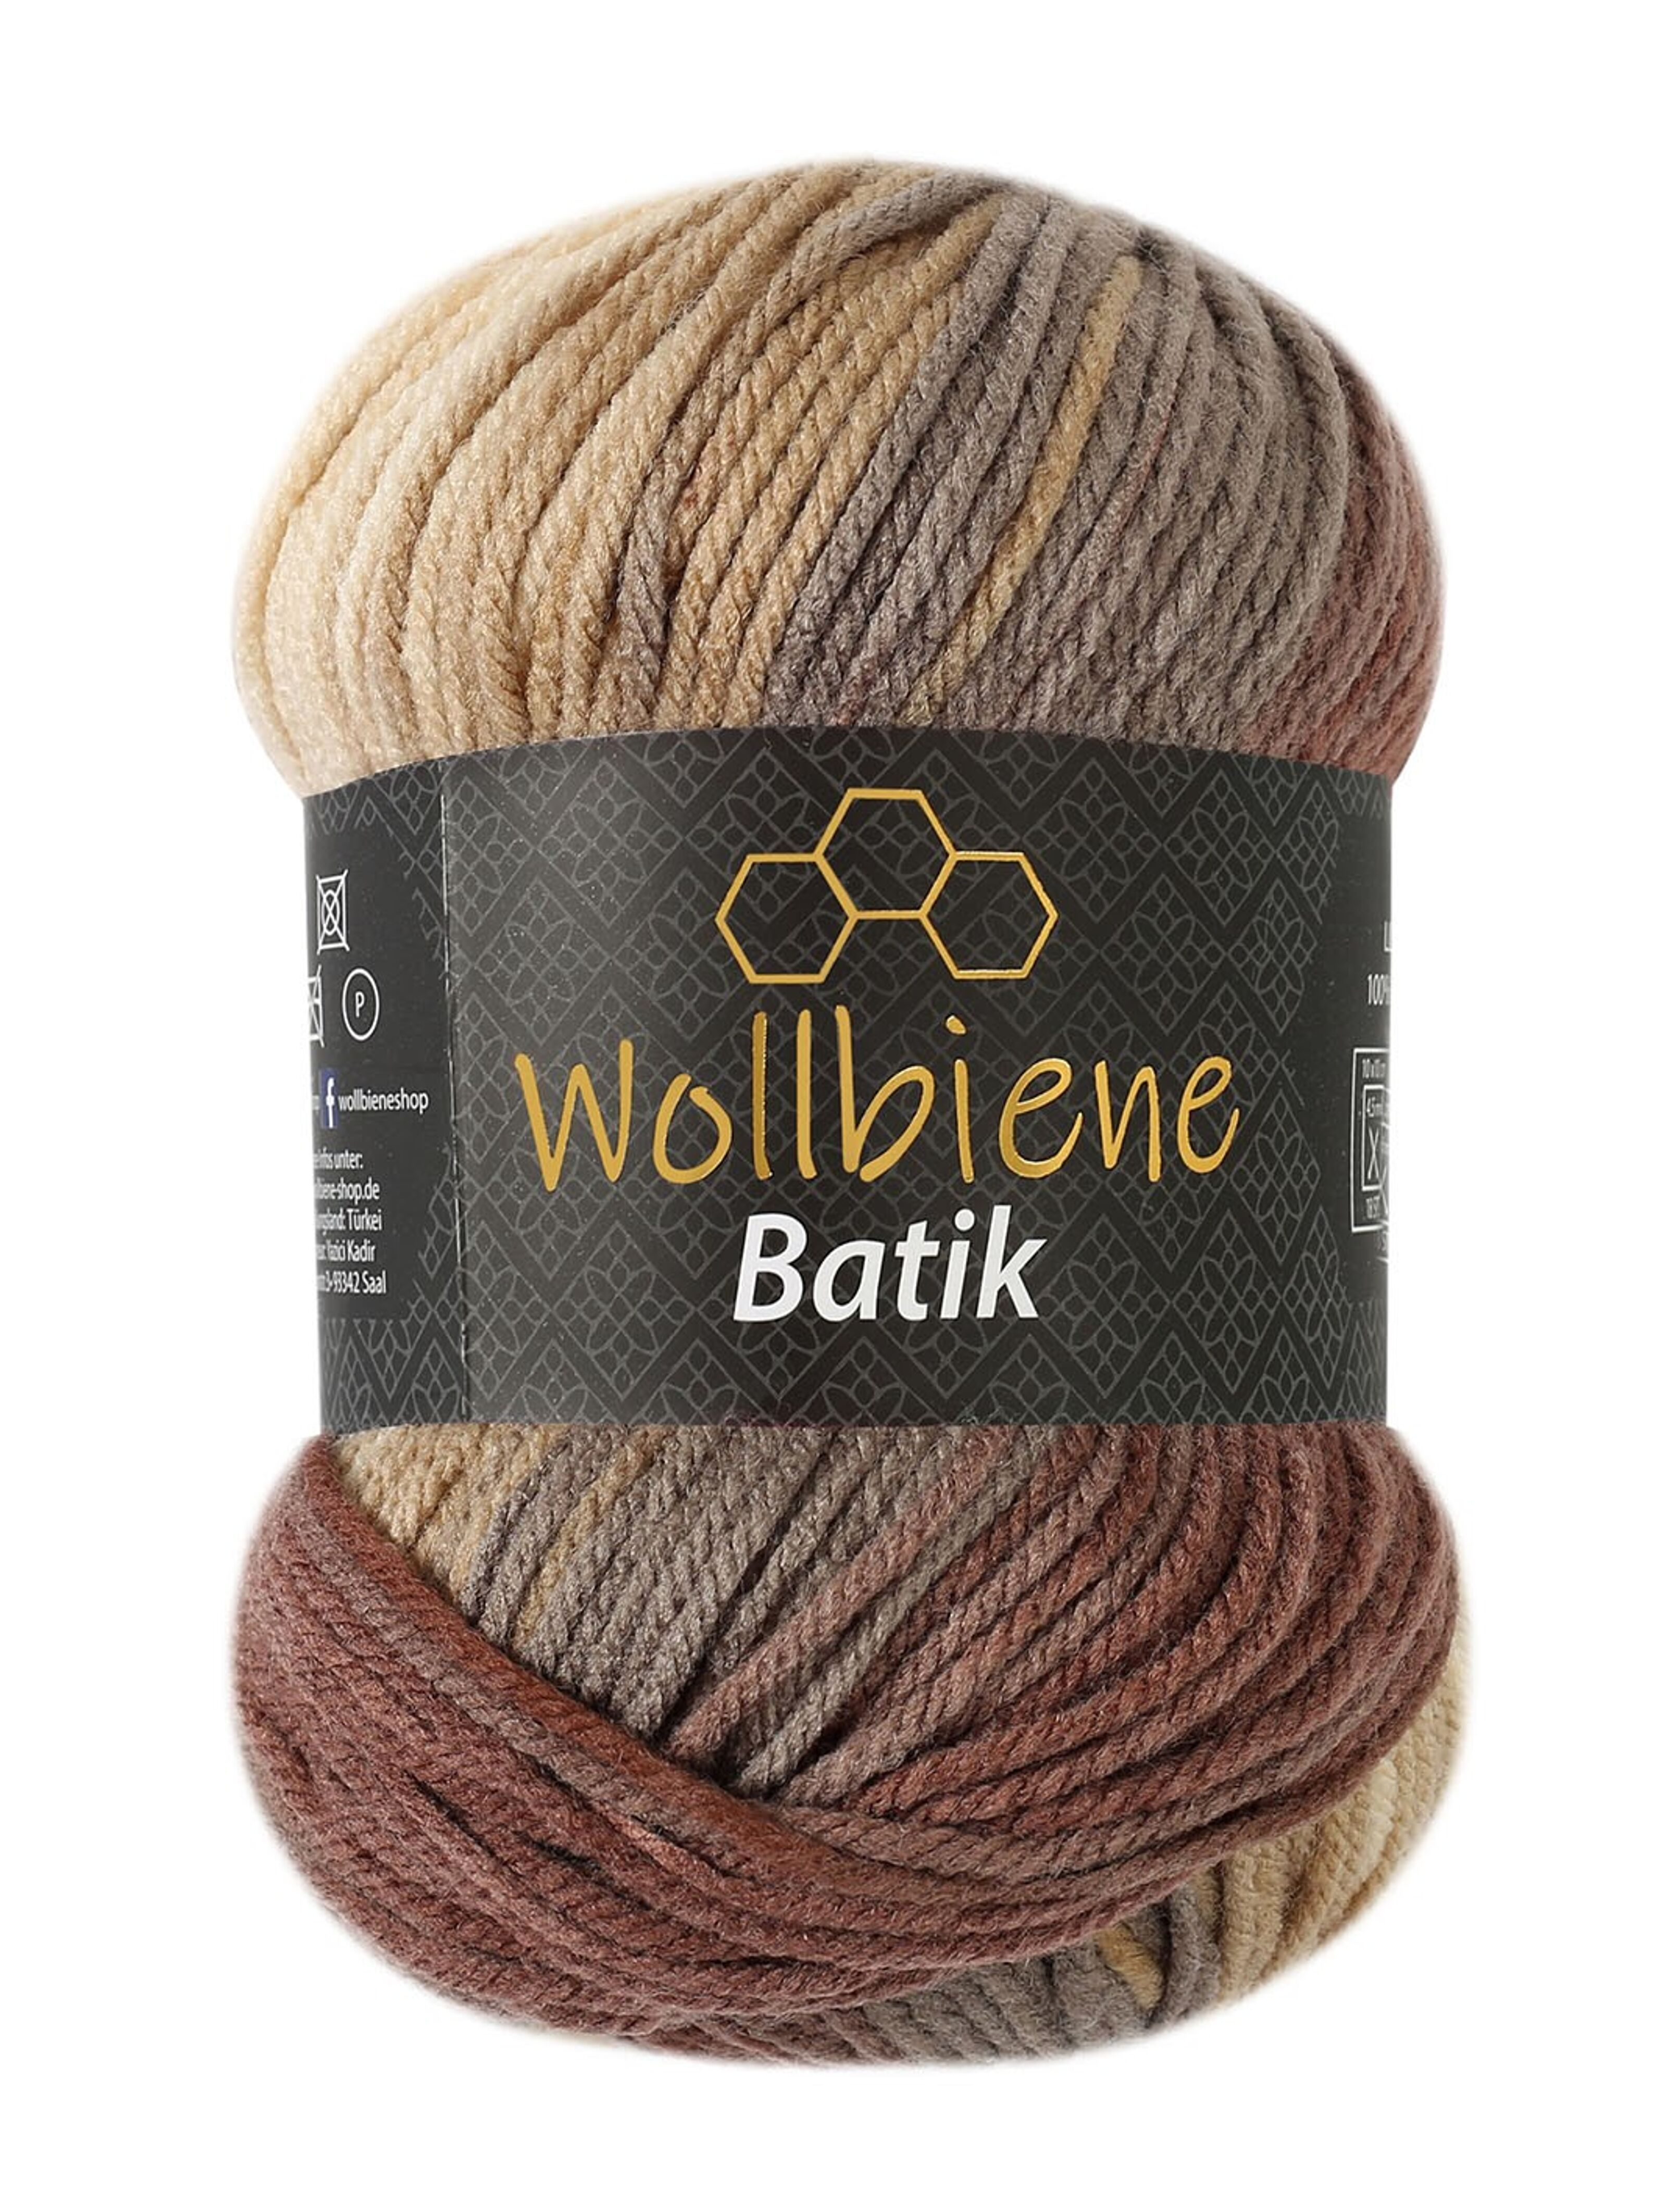 Wollbiene Batik Lot de 5 pelotes de laine de 100 g pour tricot et crochet  (500 g) Multicolore Avec dégradé de couleurs Couleur 5950 bleu, turquoise